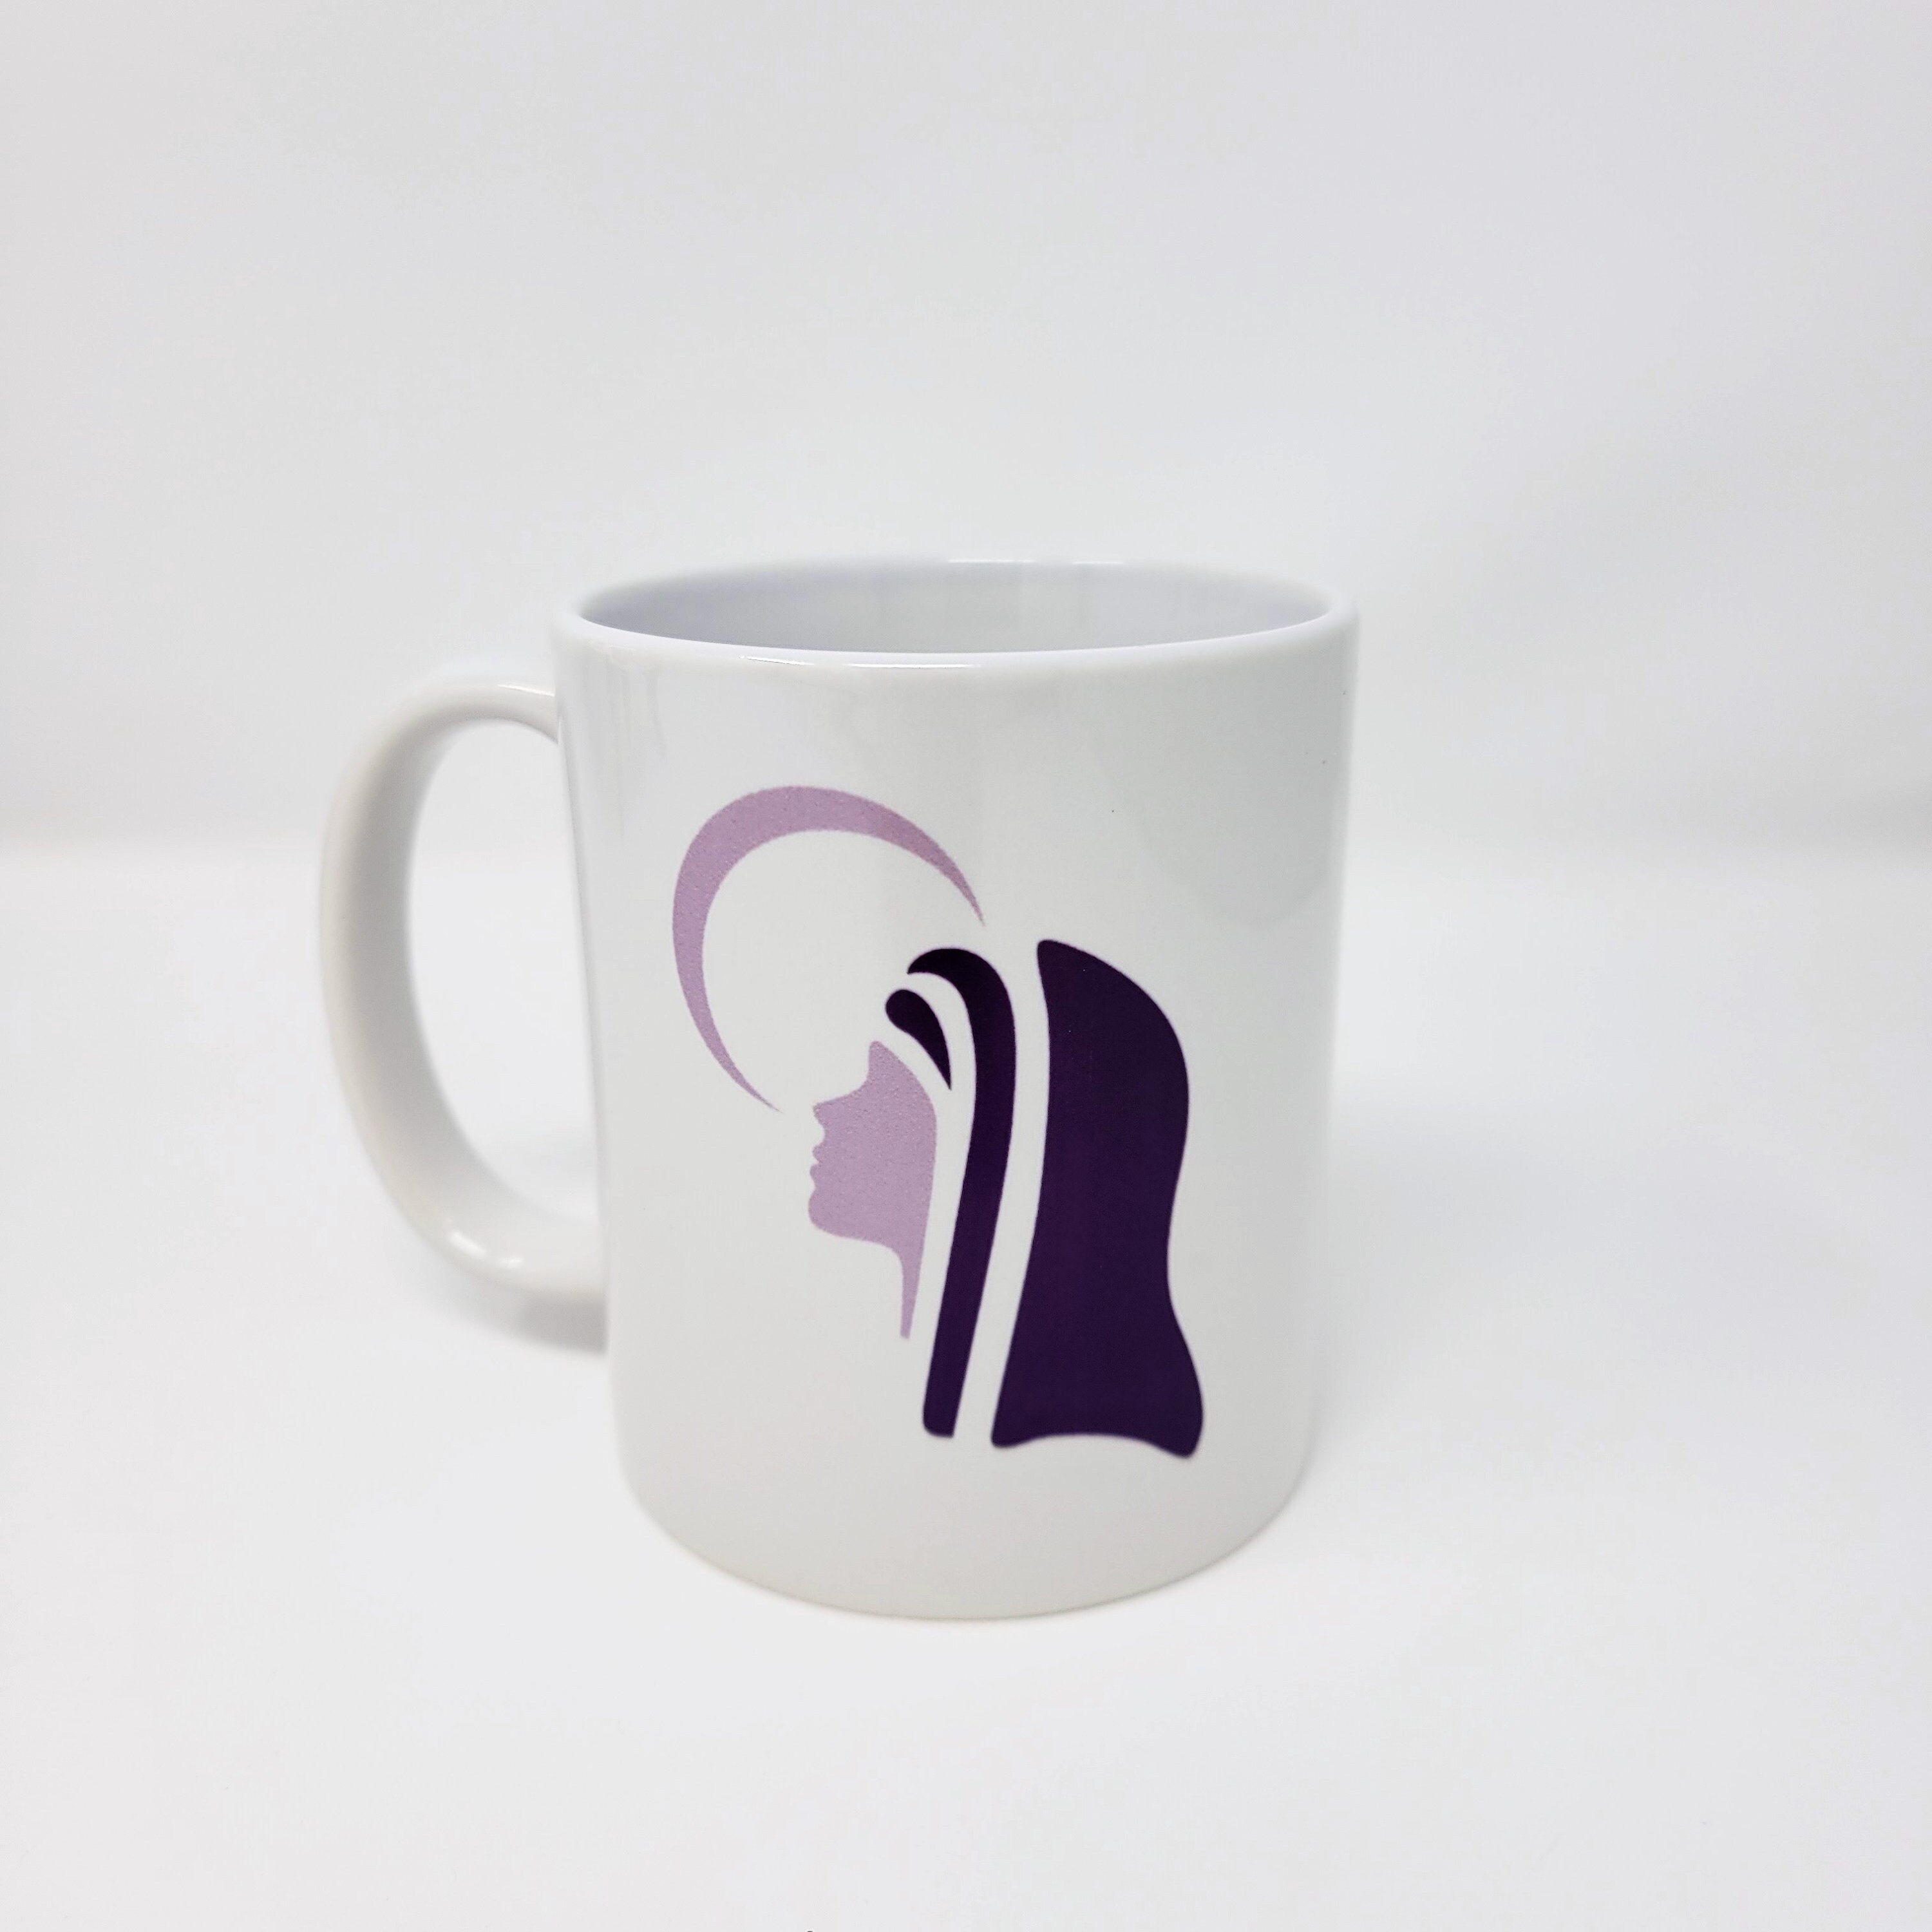 Purse Coffee Cup Mug - CupofMood